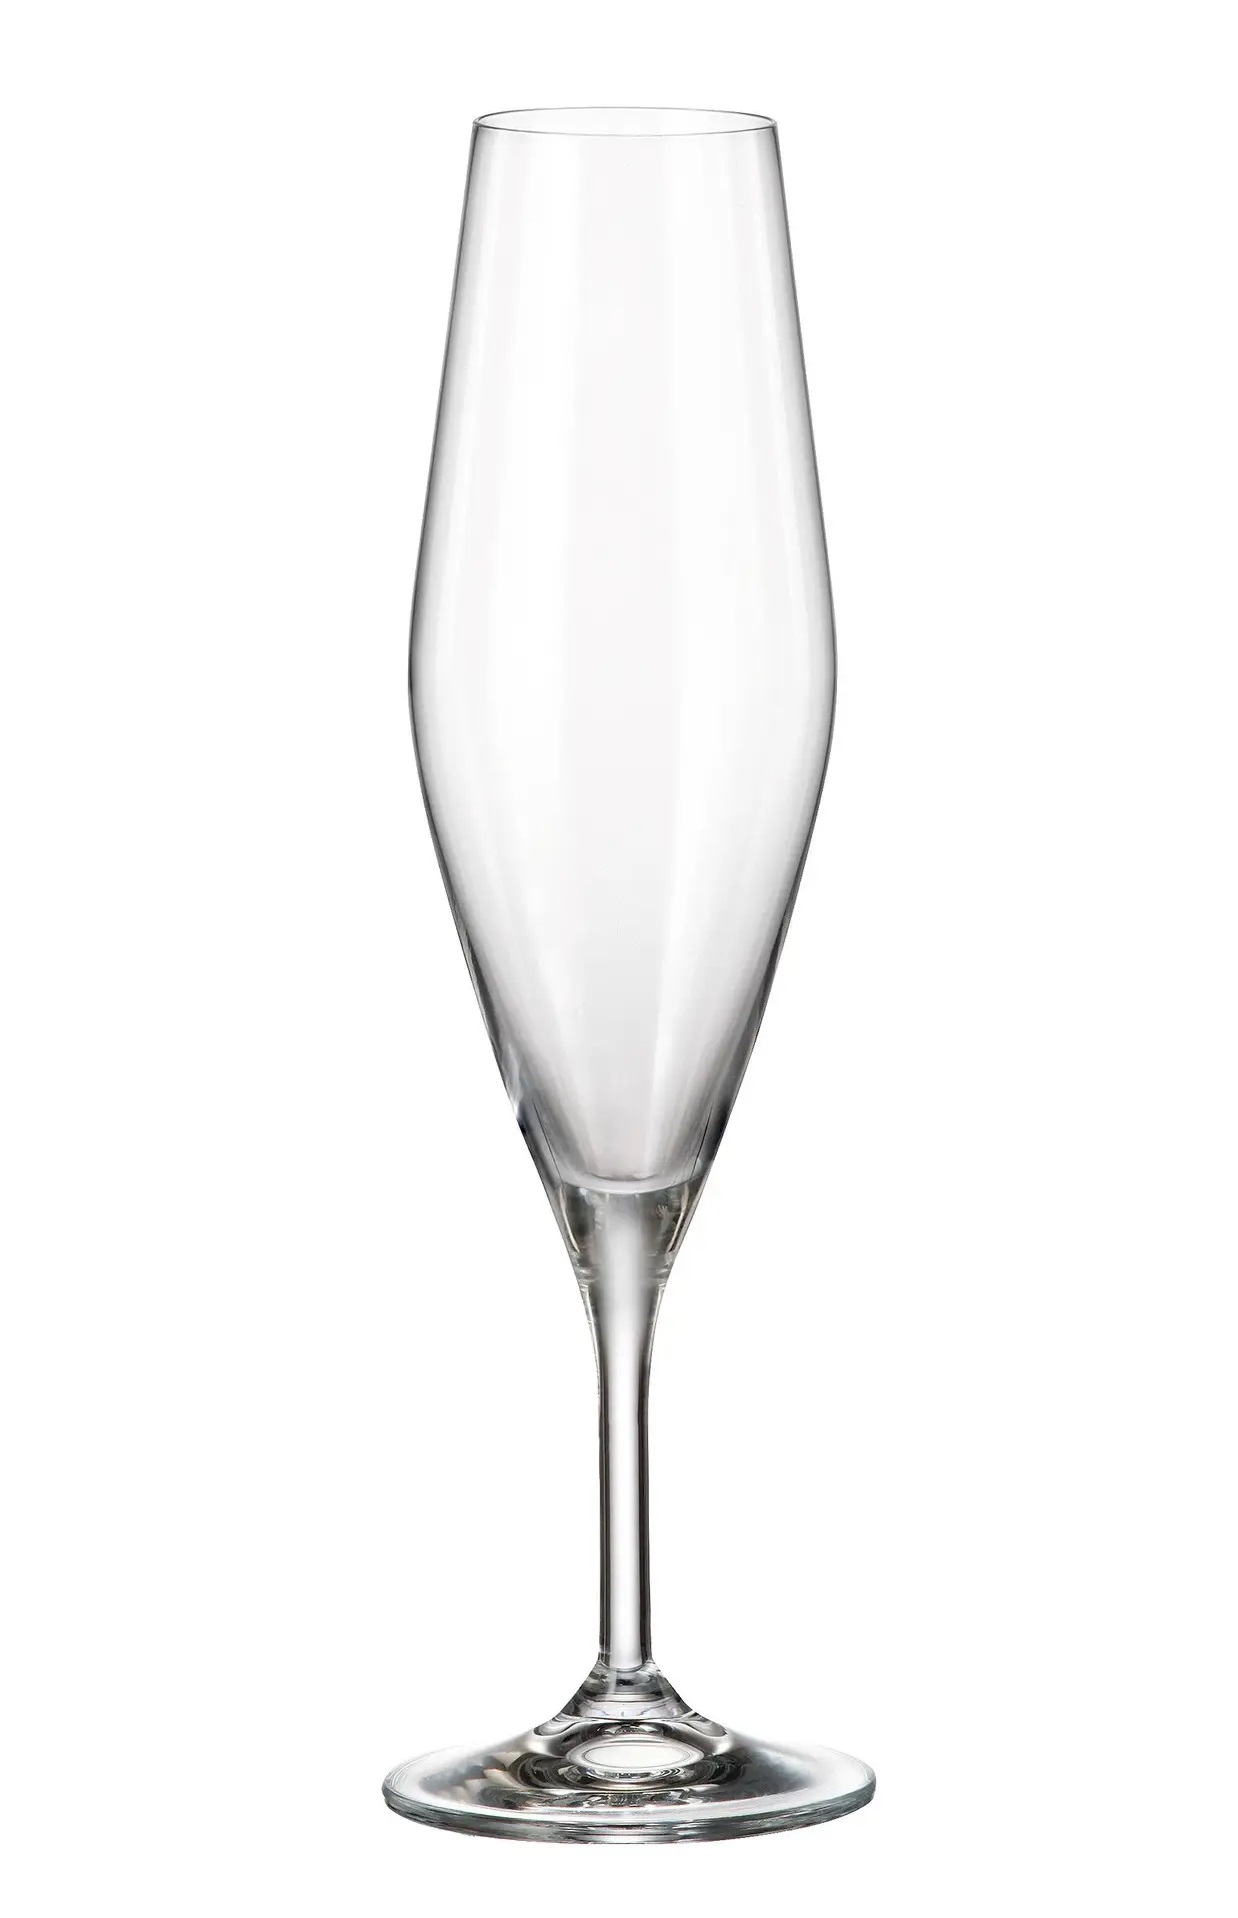 Crystalite Bohemia sklenice na šampaňské Gavia 210 ml 6KS